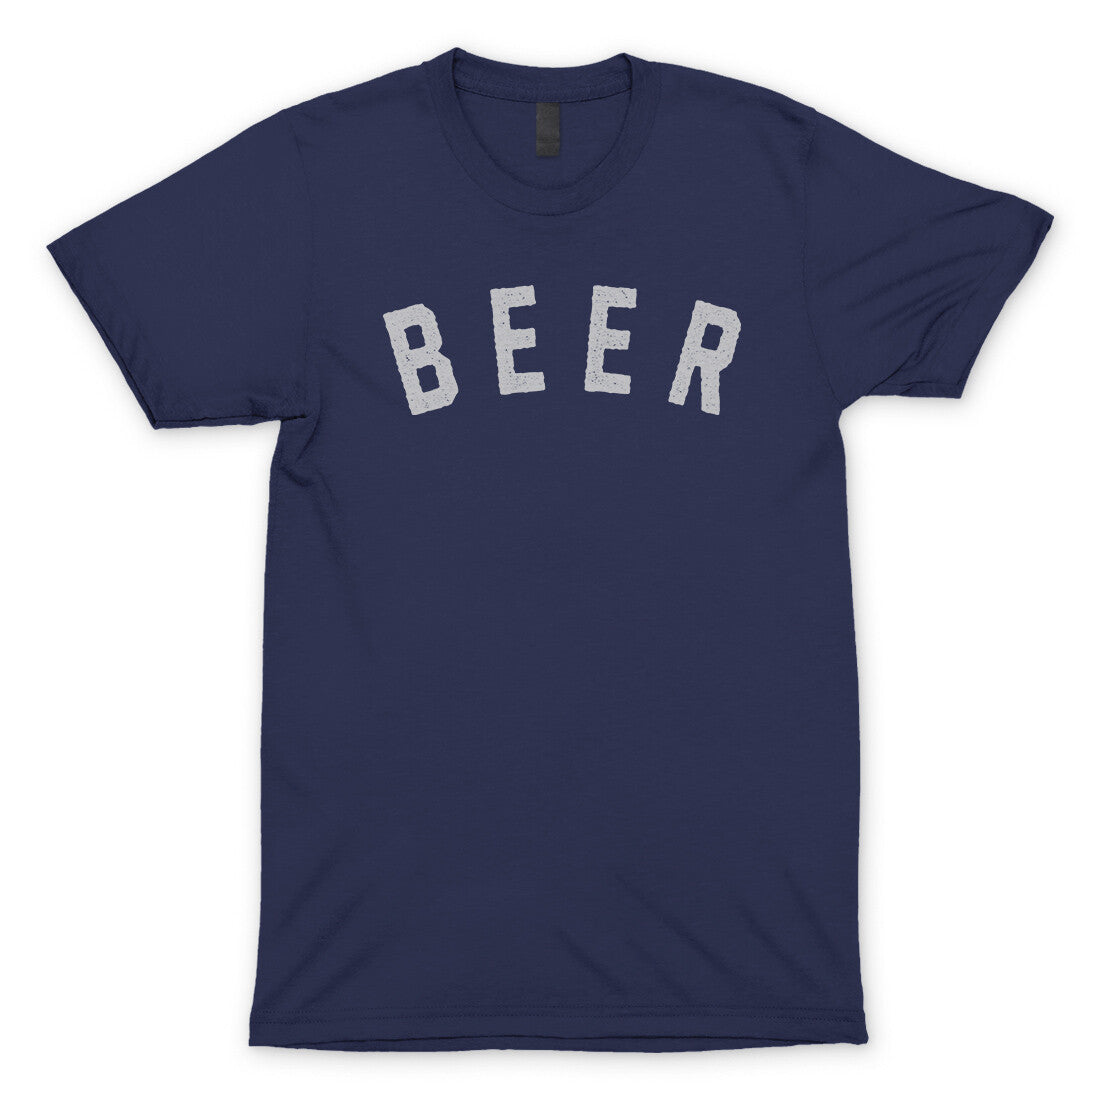 Beer in Navy Color